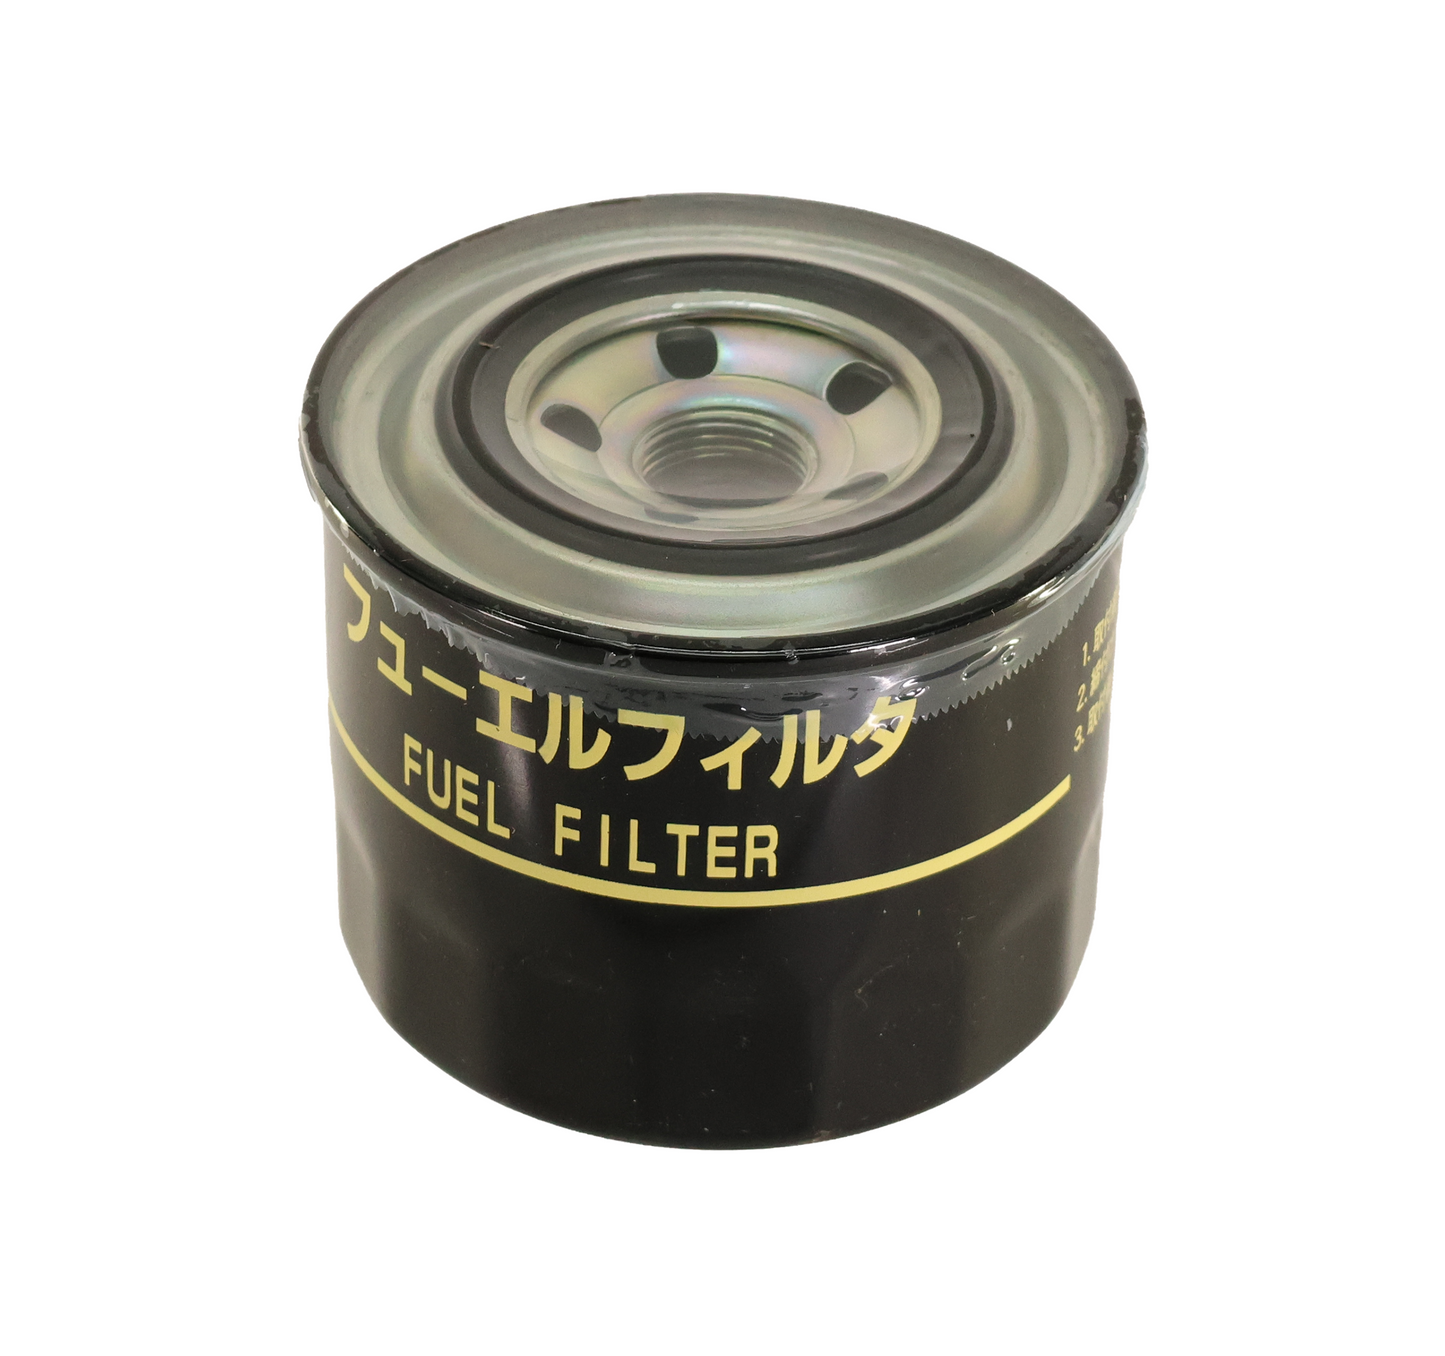 John Deere Original Equipment Fuel Filter - MIU801267